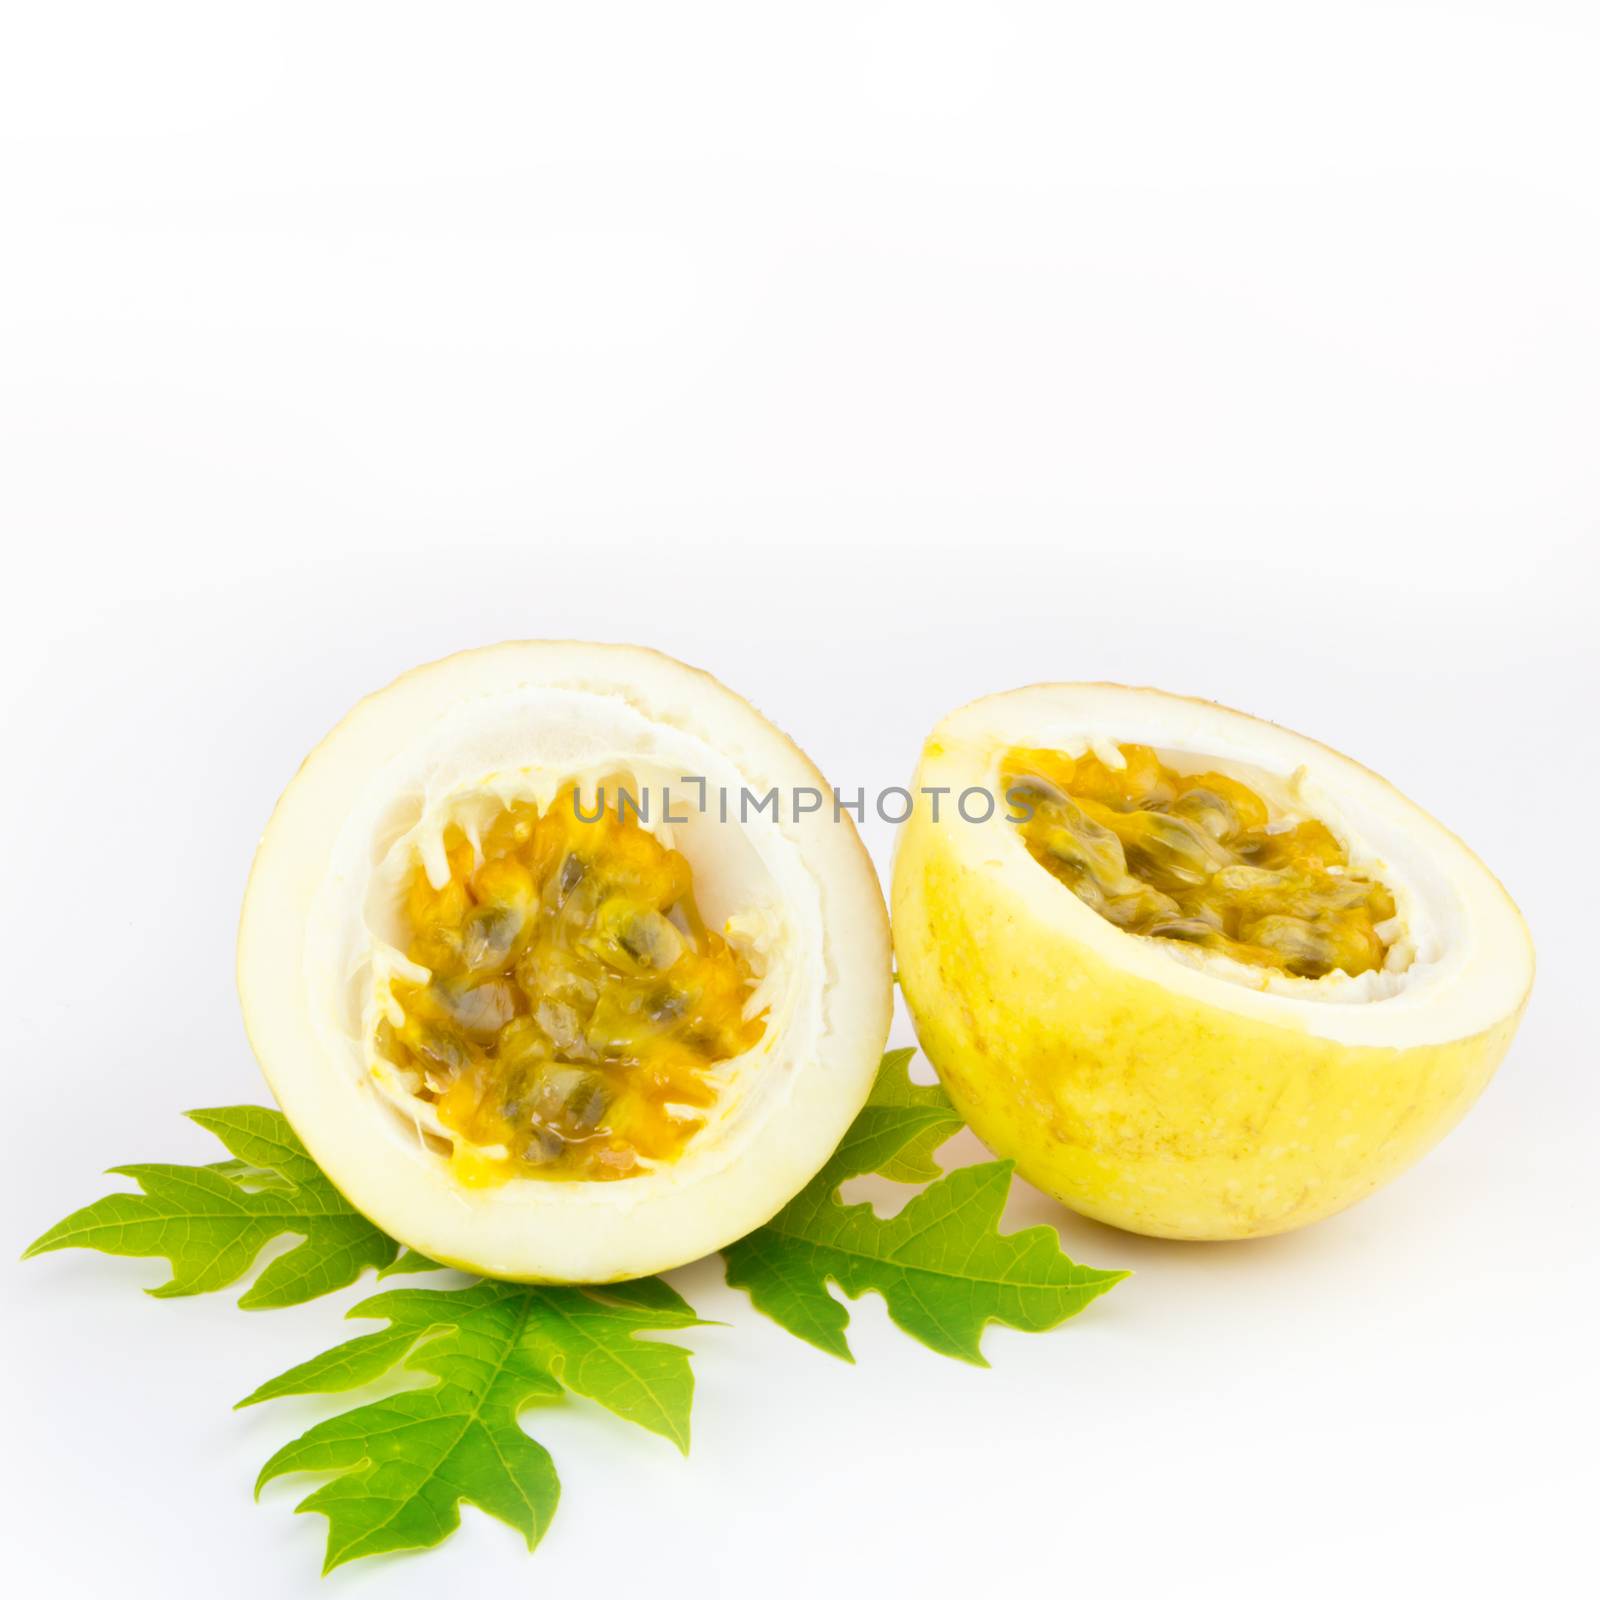 Passion fruit or maracuya on white background